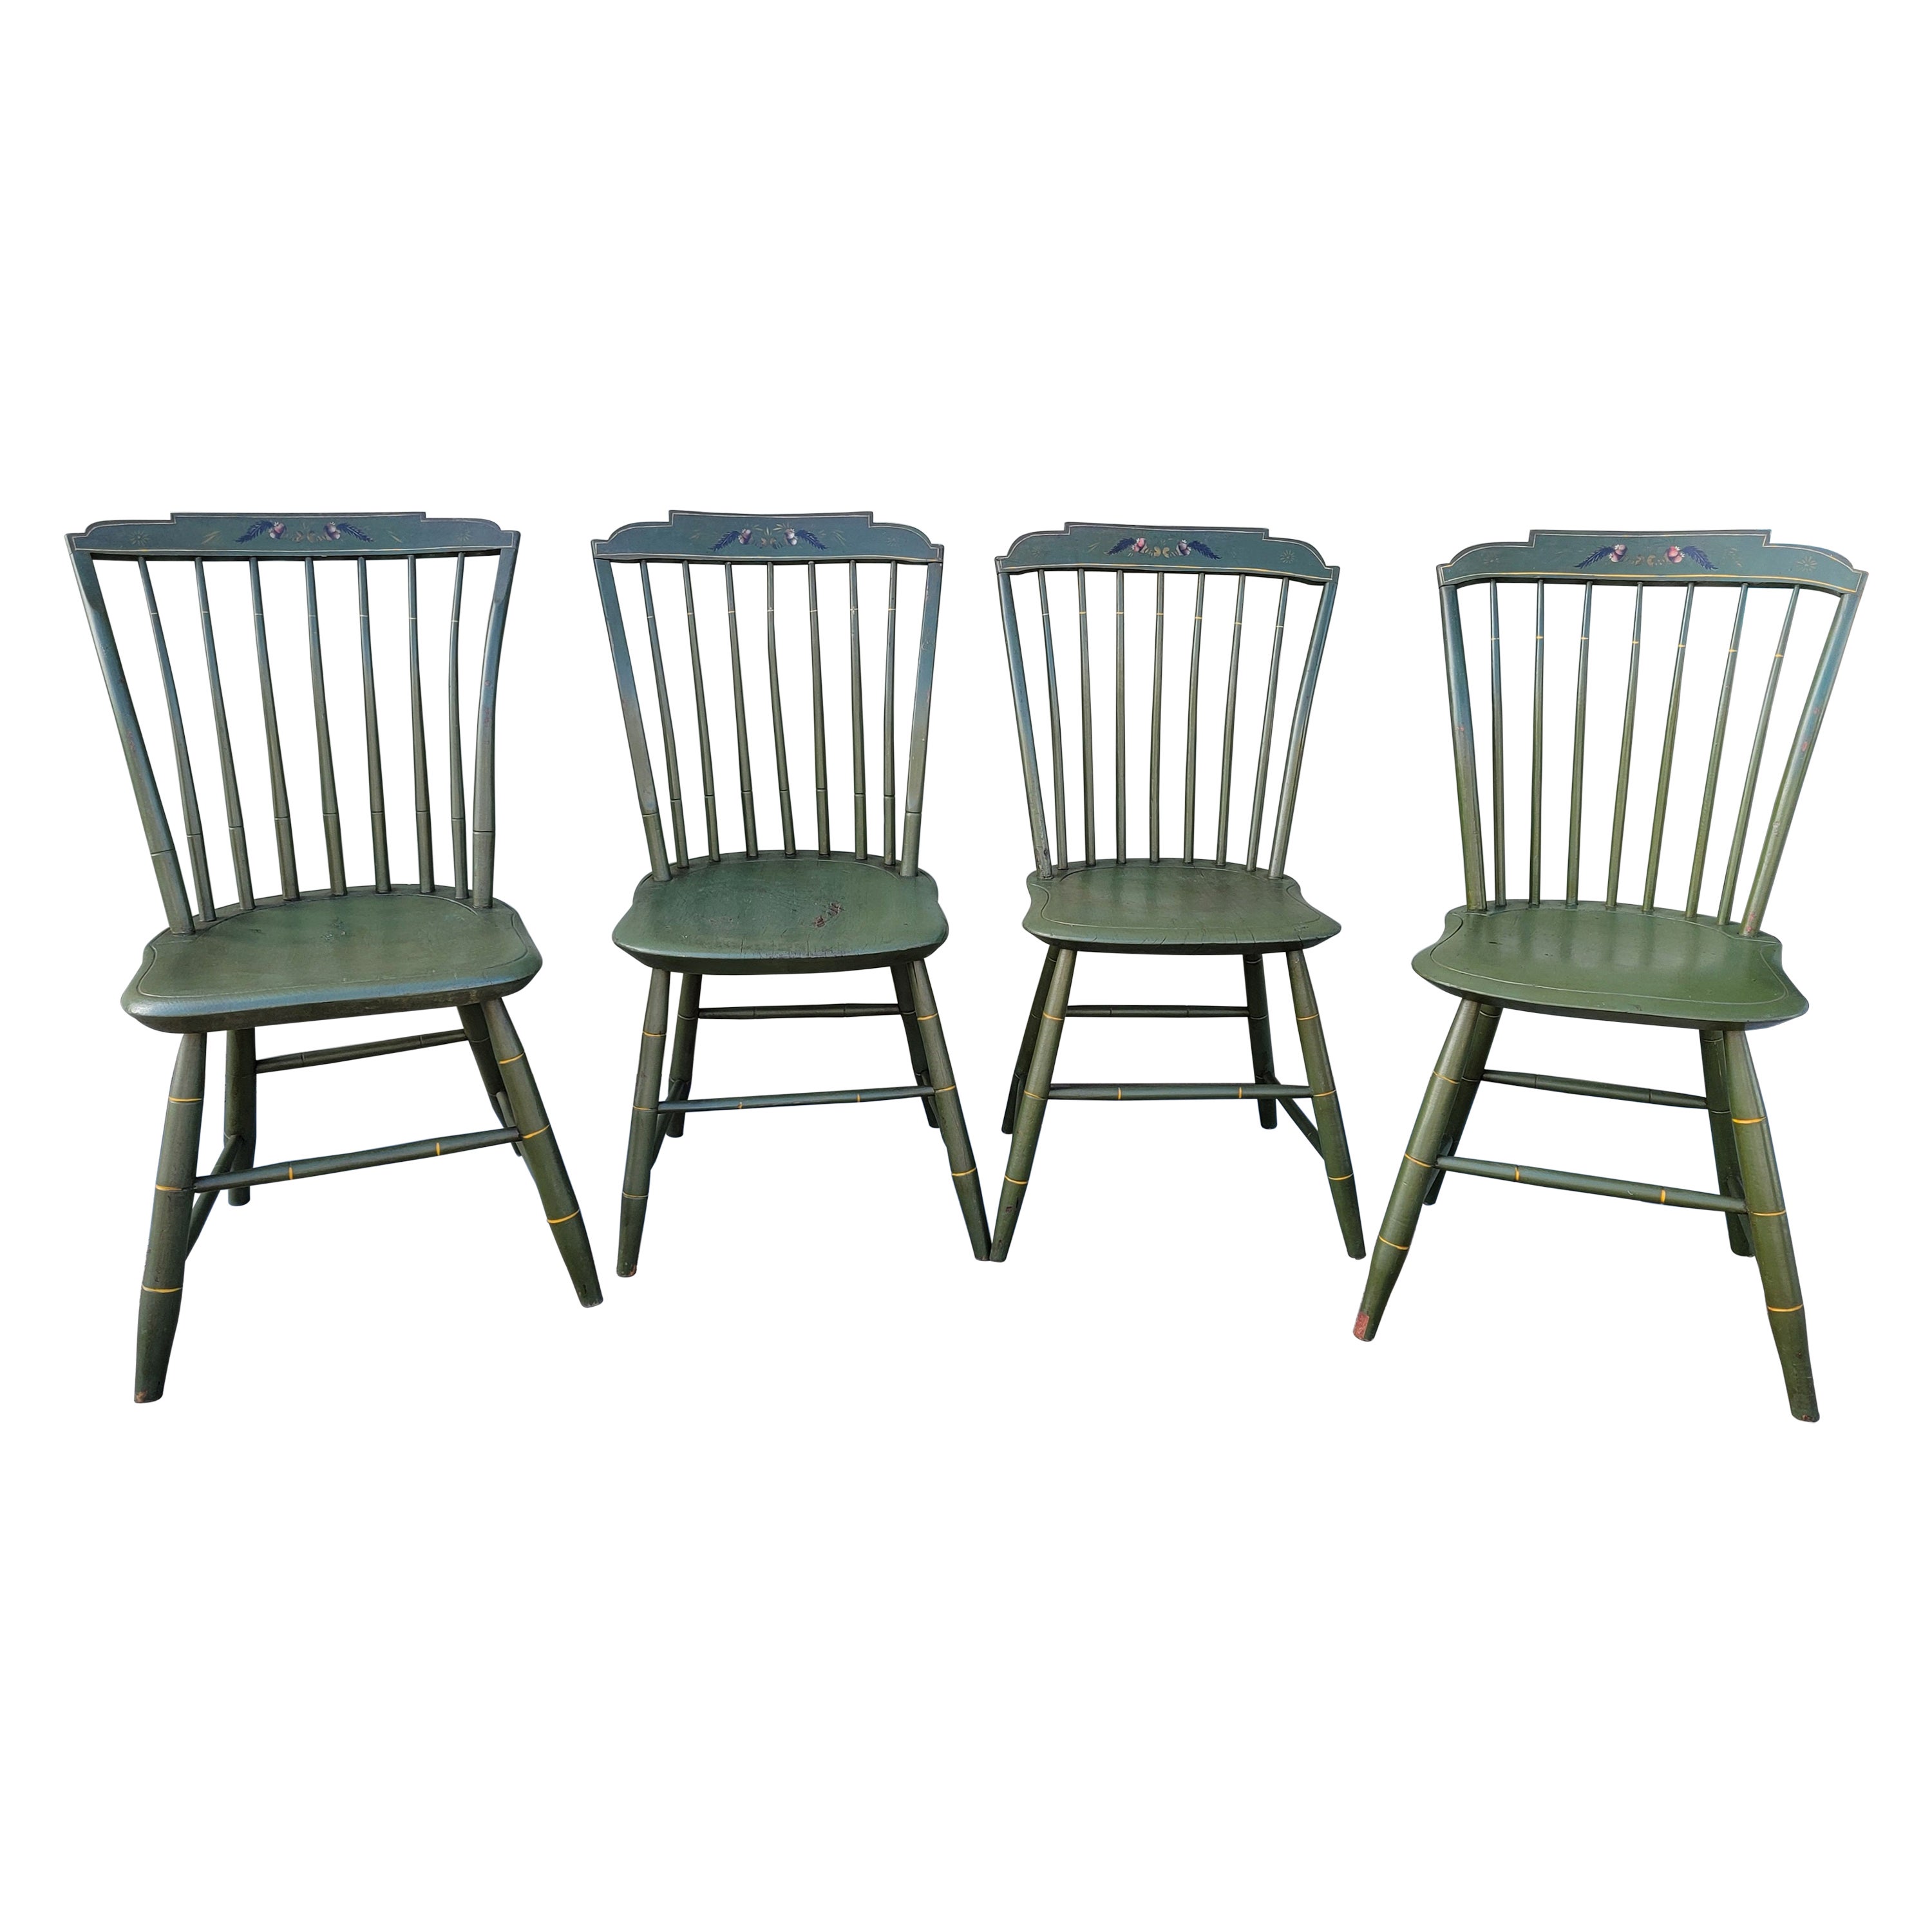 Original bemalte Step Down Windsor-Stühle des 19. Jahrhunderts -4